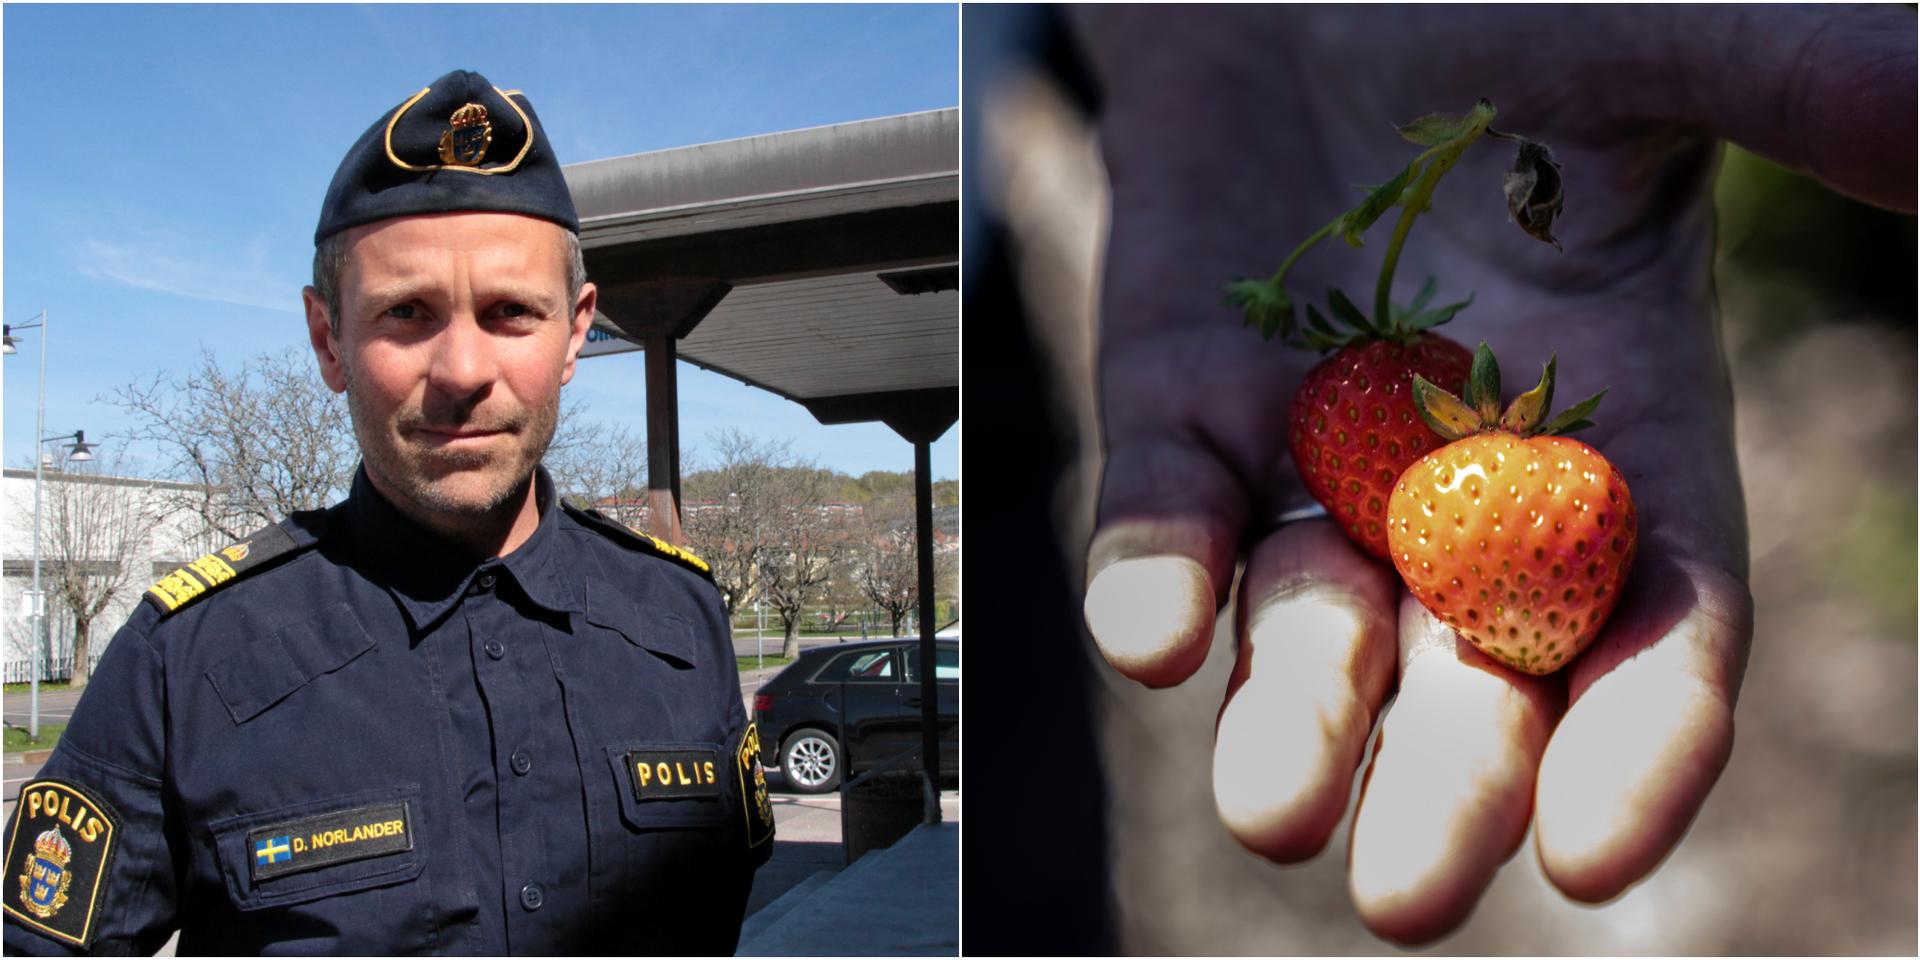 Stort polistillslag mot olaglig jordgubbsförsäljning